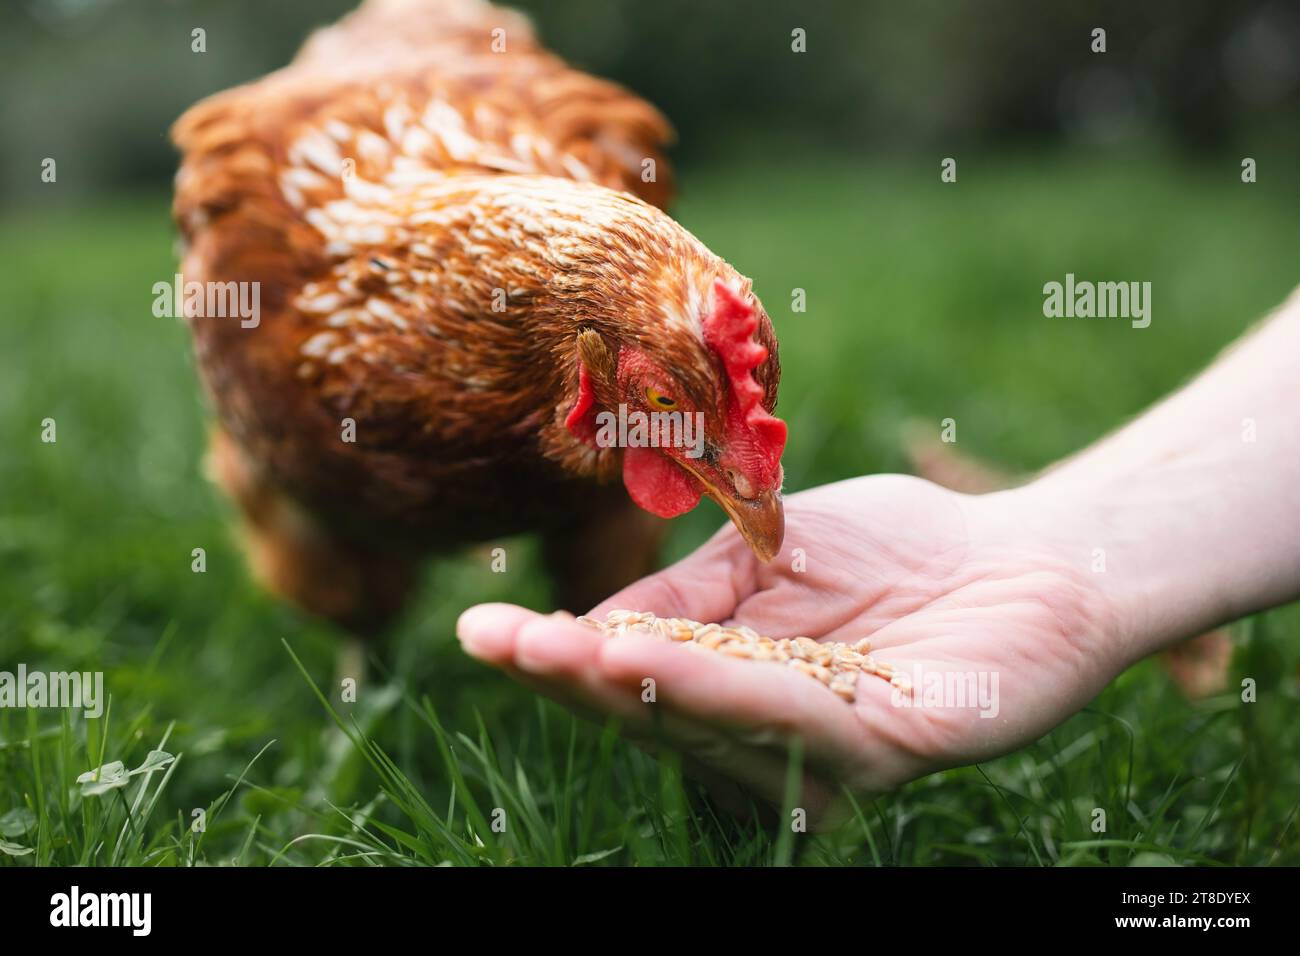 Der Landwirt ernährt Hühner von Hand. Hühner, die Körner aus der Hand des Menschen in grünem Gras picken. Themen ökologischer Bauernhof, Pflege und Vertrauen. Stockfoto